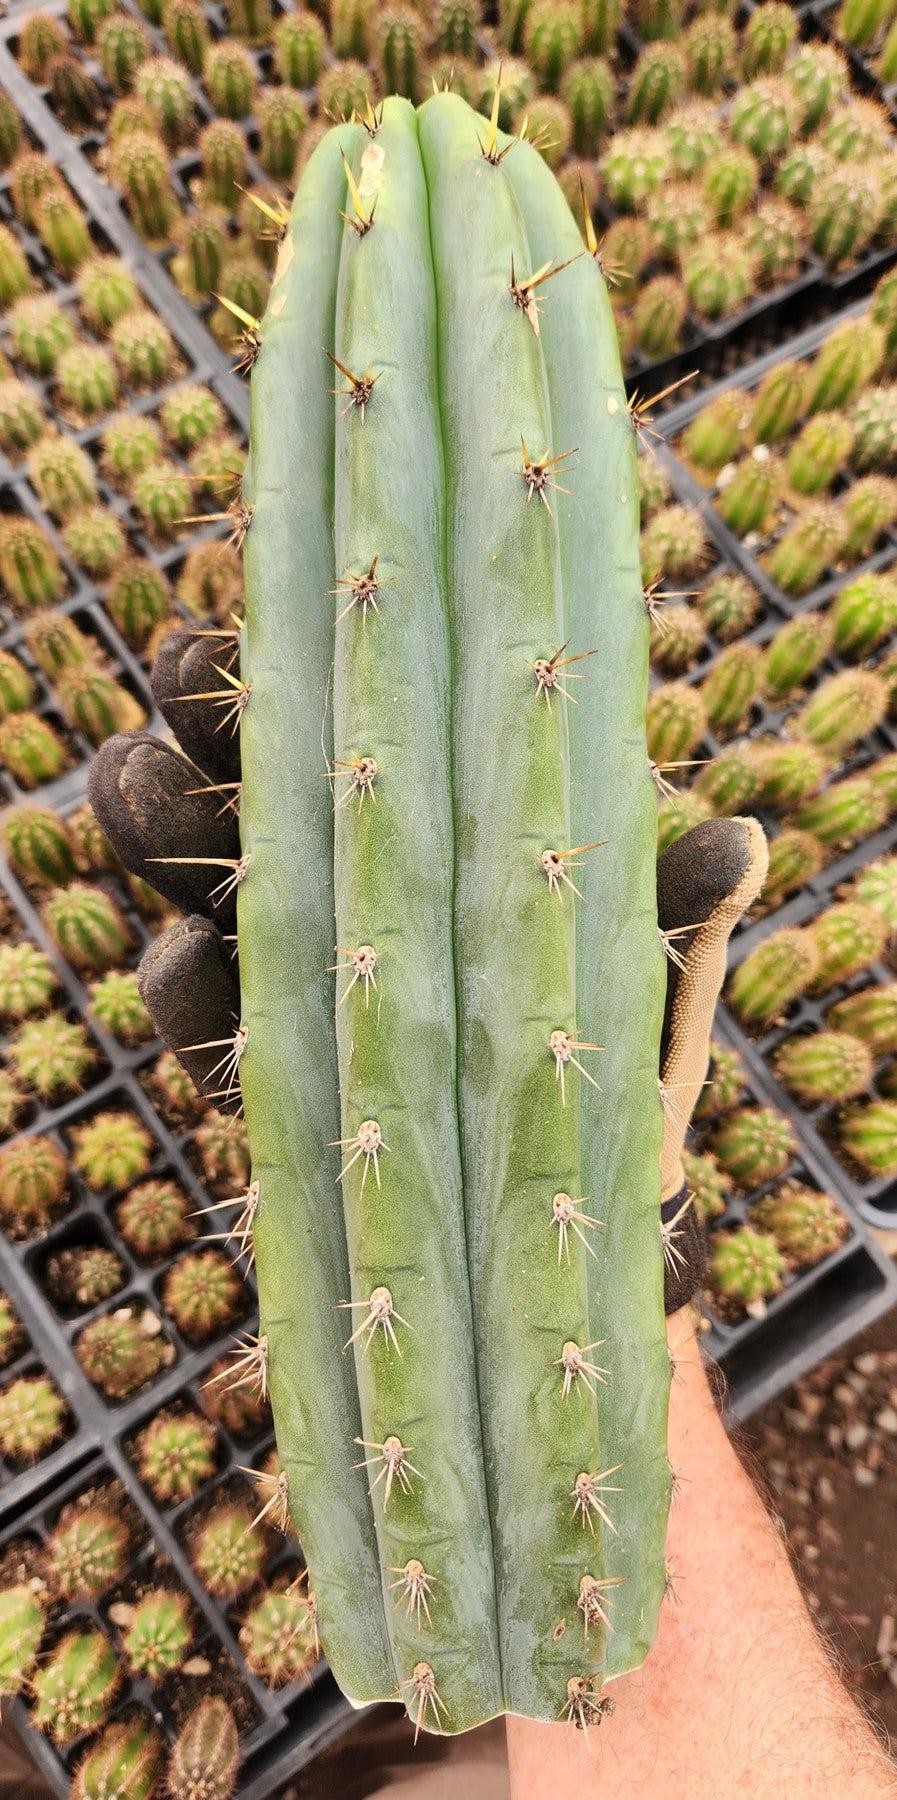 #EC196 EXACT trichocereus Peruvianus "Rancho" Ornamental Cactus Cutting 8-14"-Cactus - Large - Exact-The Succulent Source